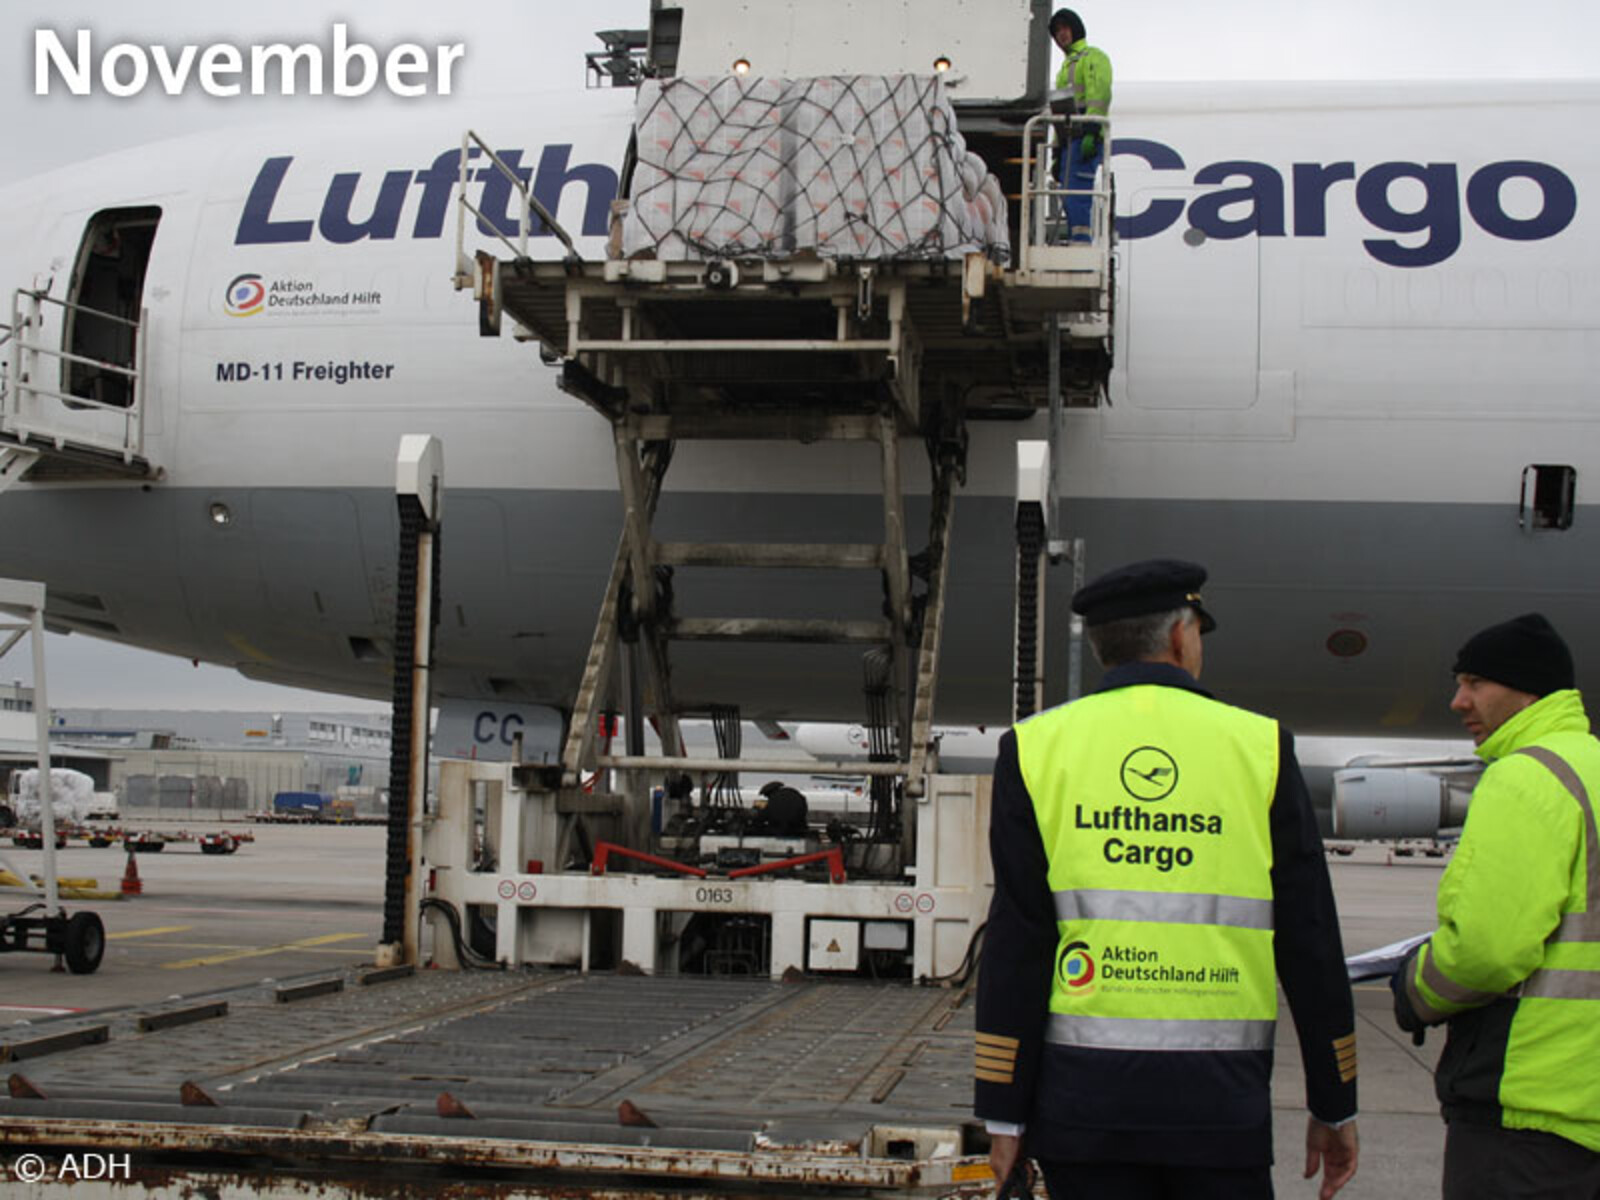 22. November – Gemeinsam mit Europas führender Frachtairline Lufthansa Cargo brachte Aktion Deutschland Hilft am 22. November einen Sonderflug mit 66 Tonnen Hilfsgütern auf den Weg nach Manila